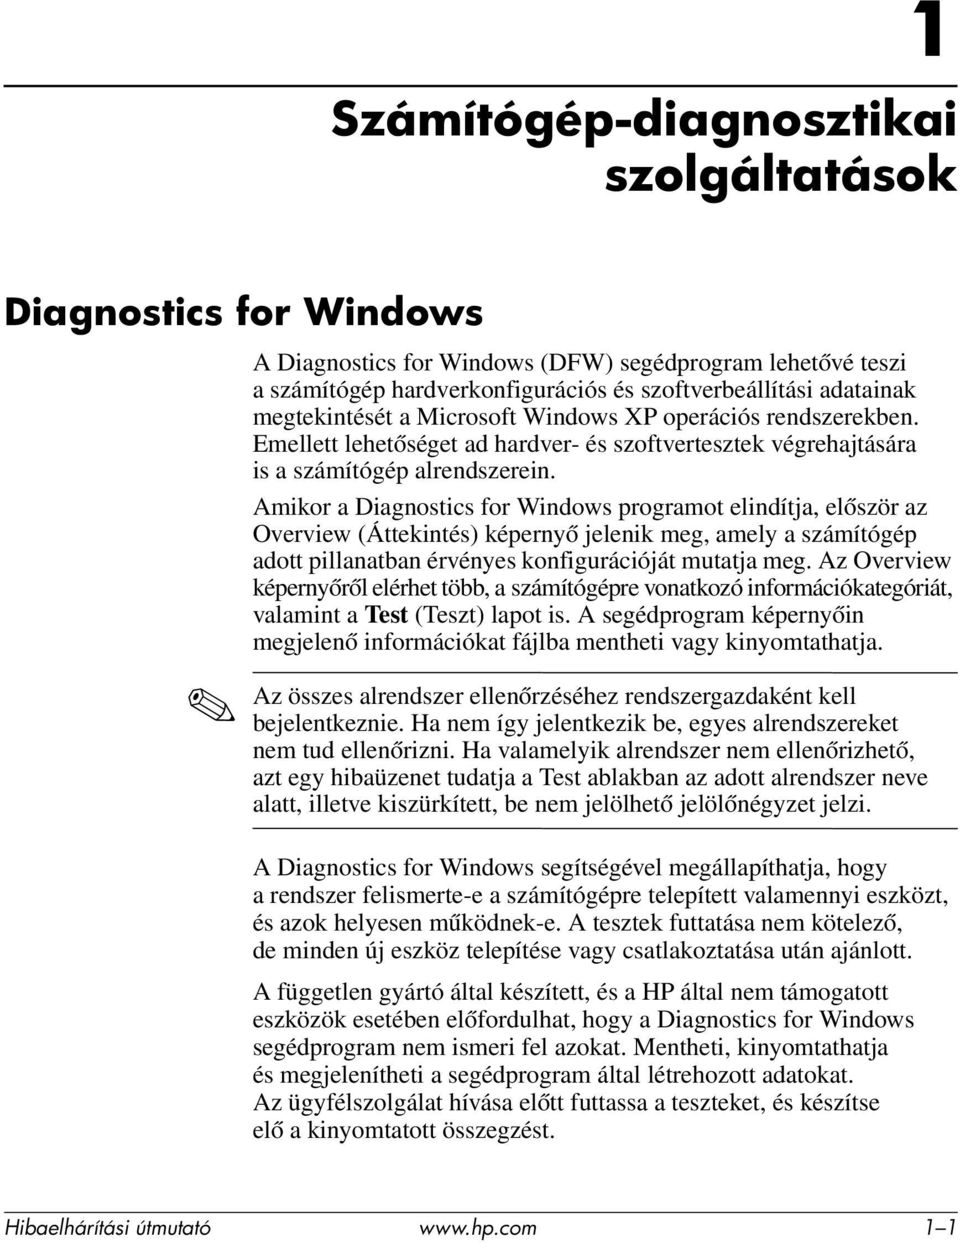 Amikor a Diagnostics for Windows programot elindítja, először az Overview (Áttekintés) képernyő jelenik meg, amely a számítógép adott pillanatban érvényes konfigurációját mutatja meg.